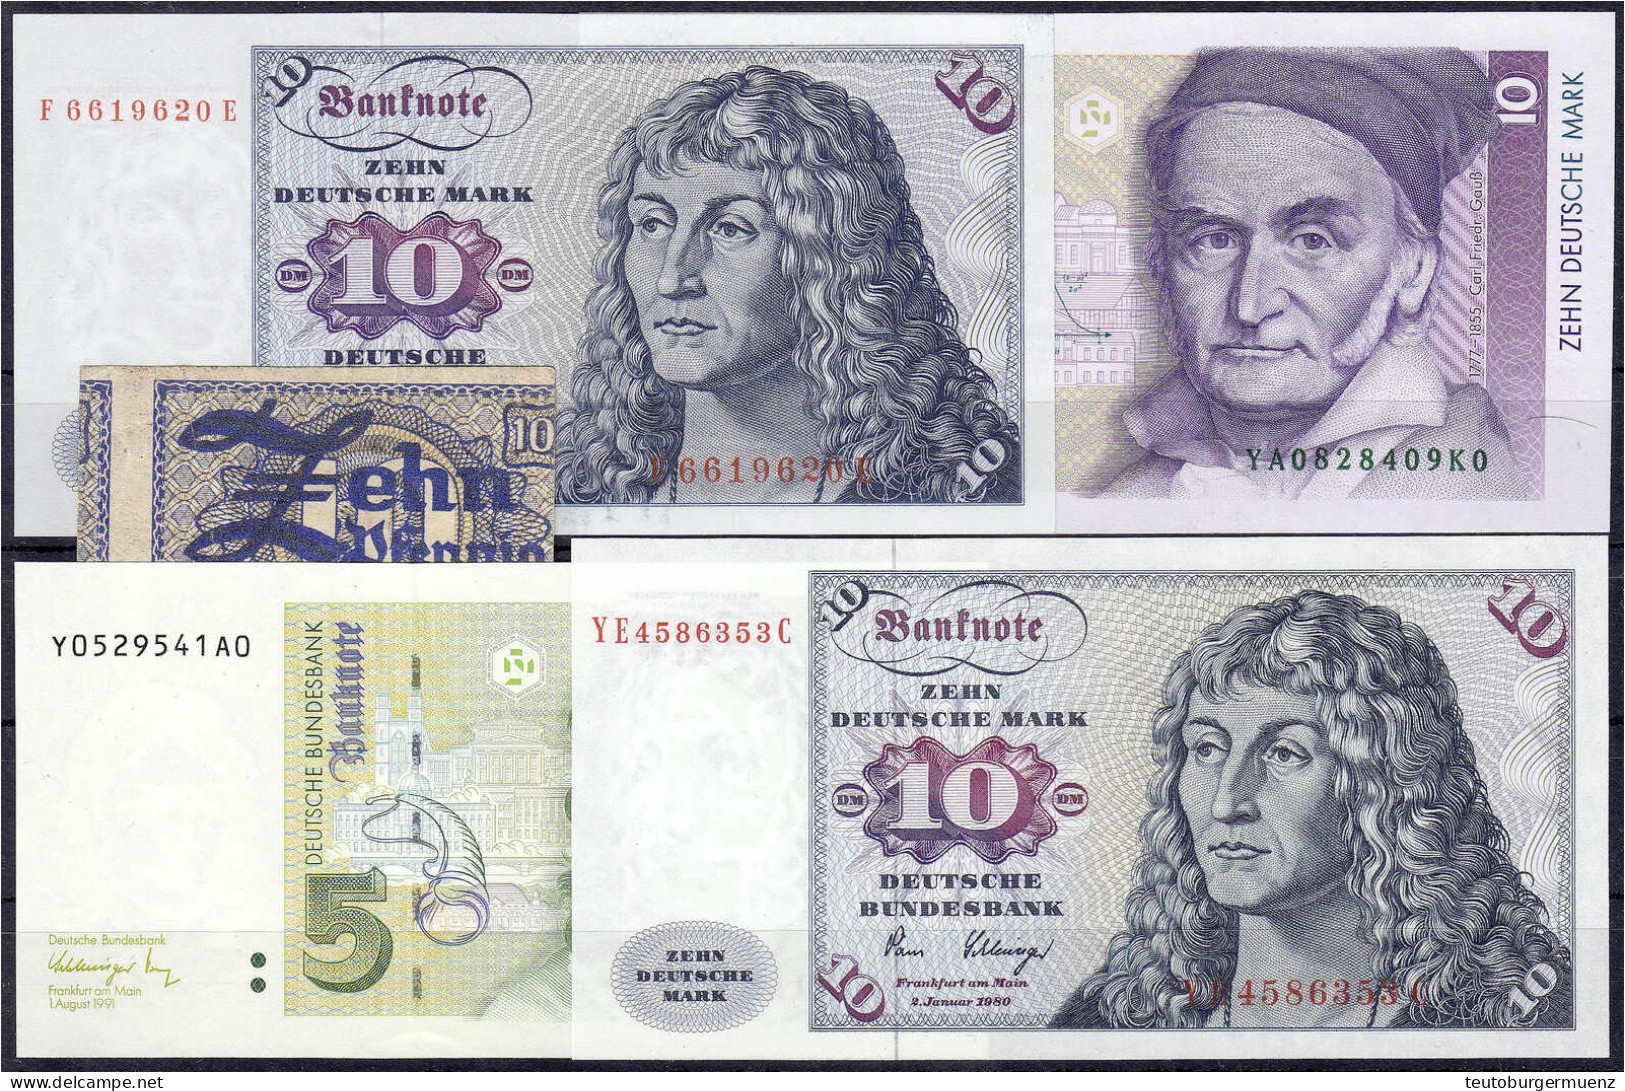 5 Scheine: 10 Pfg. BDL 1948, 5 Deutsche Mark 1991 Und 3x 10 Deutsche Mark 1960, 1980 Und 1993. I-III - Sammlungen